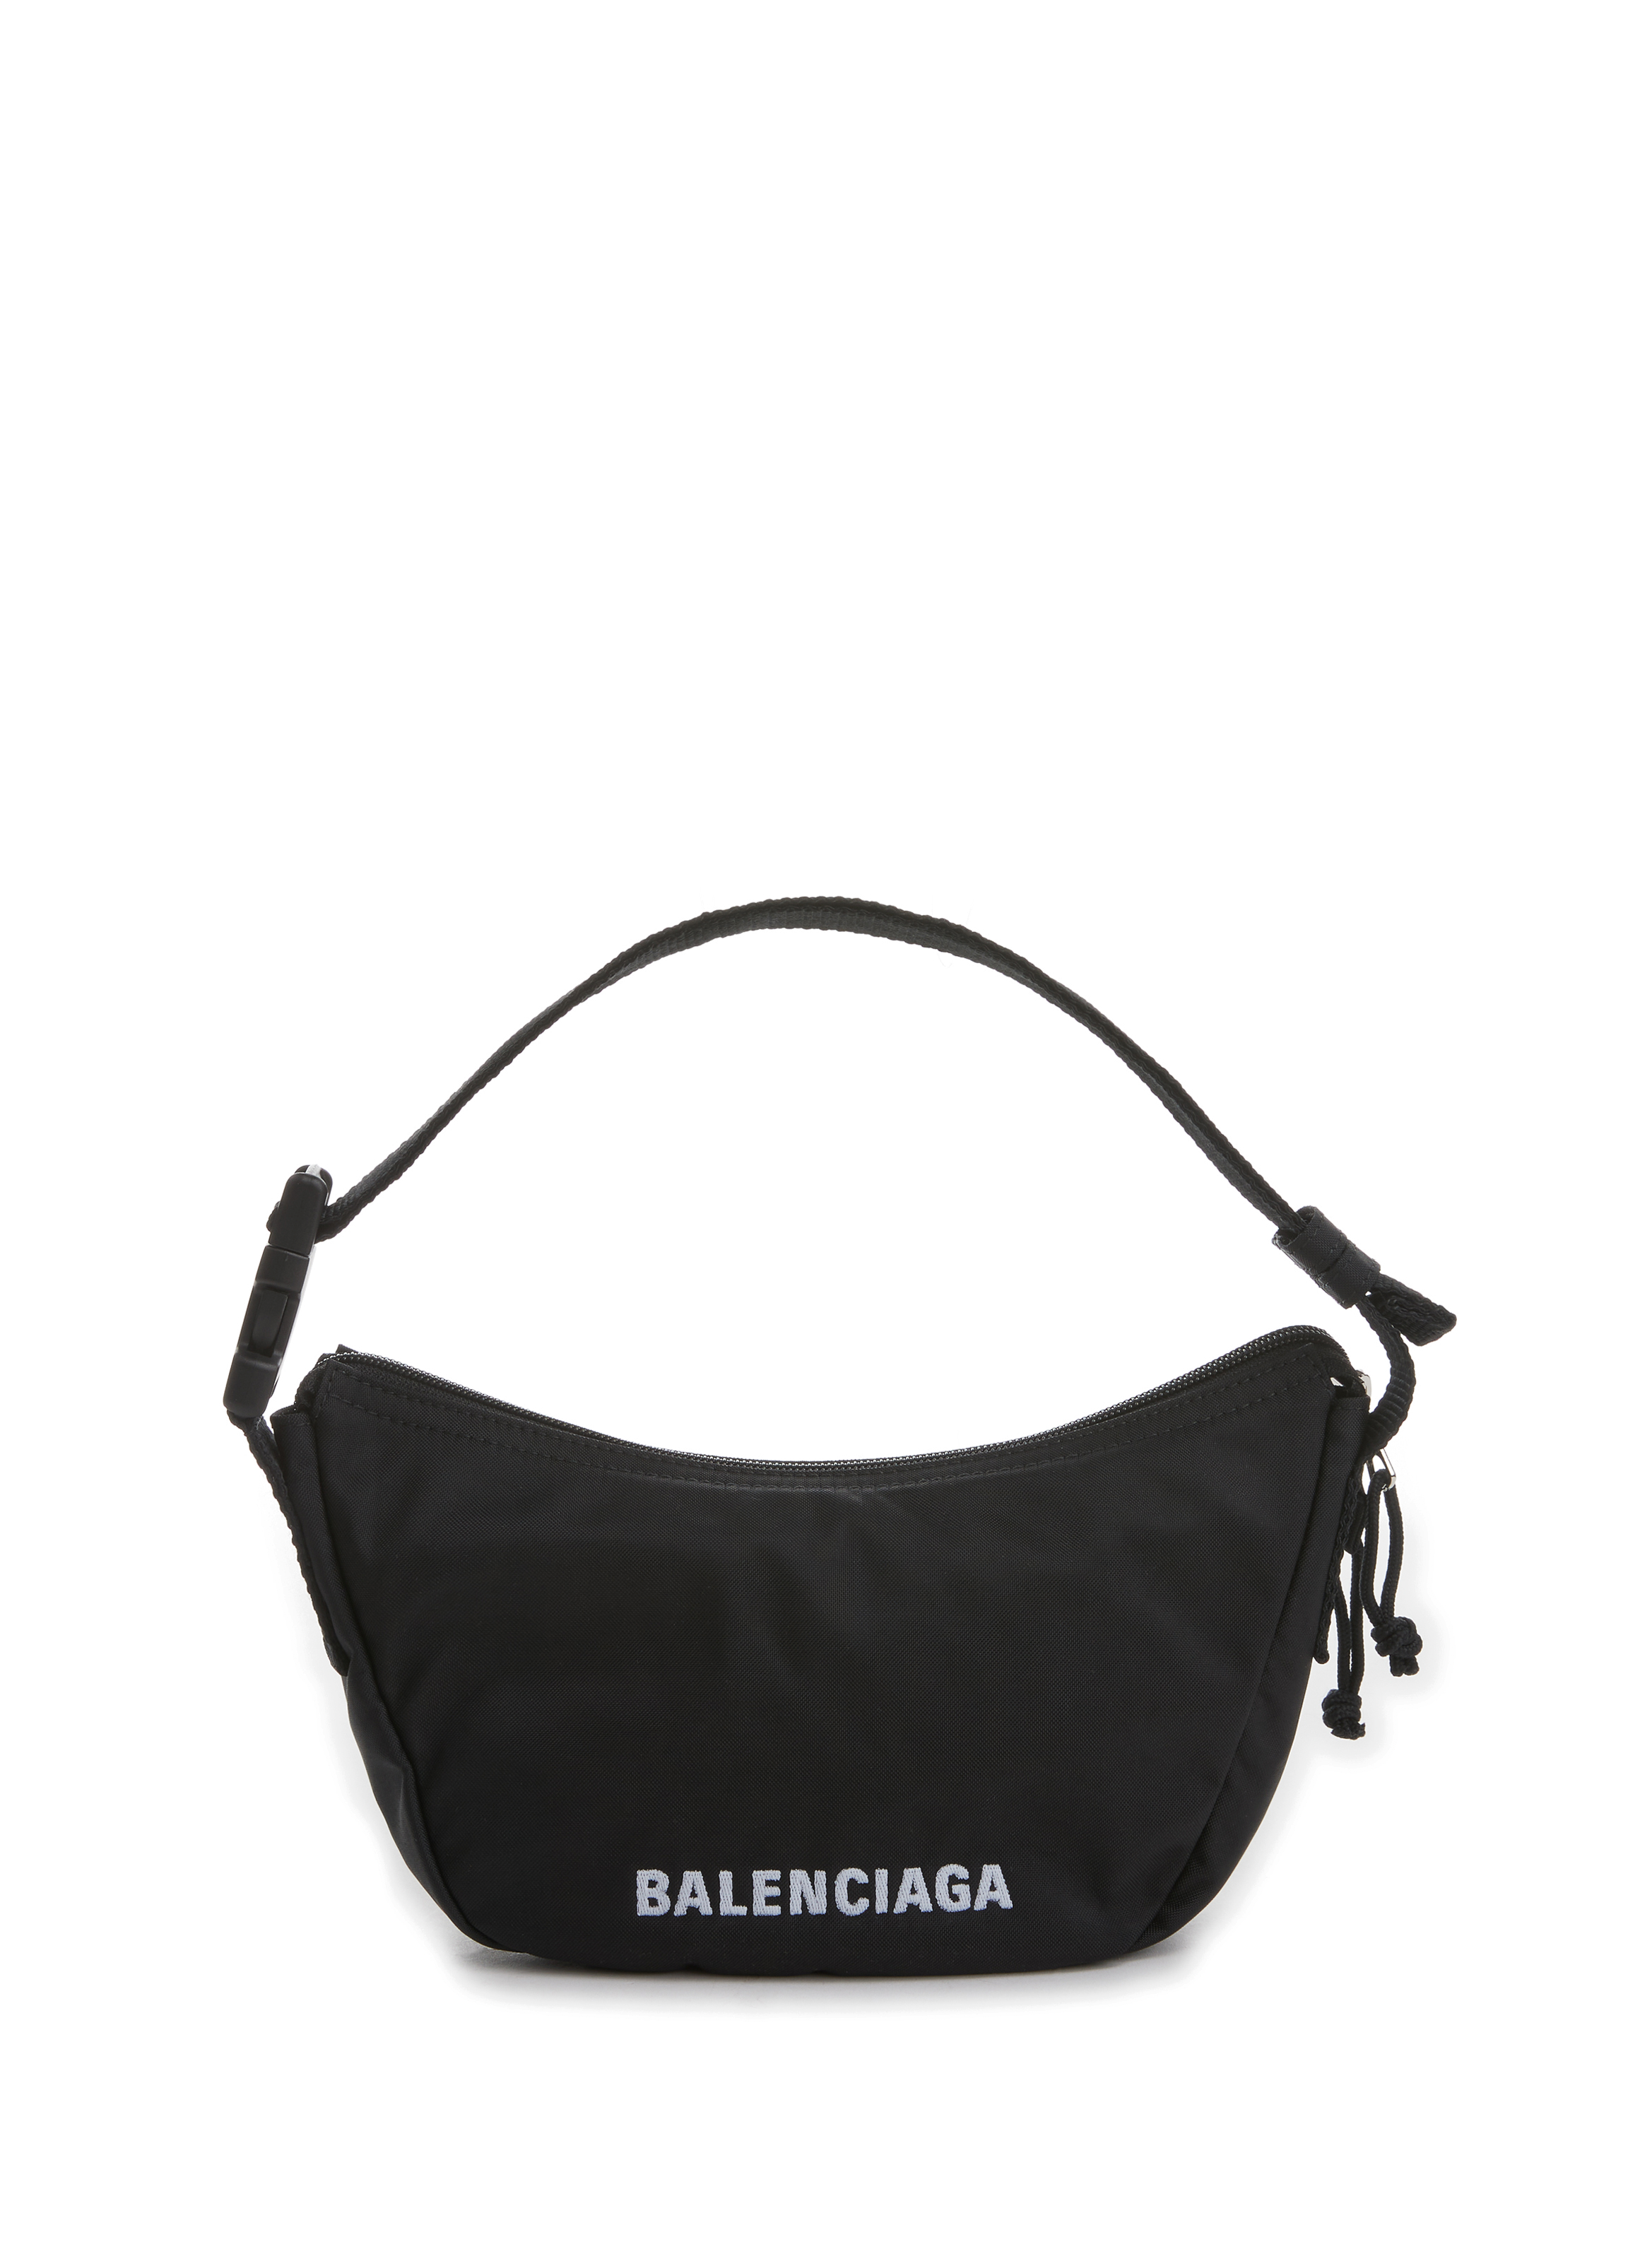 BALENCIAGA Wheel Sling bag in recycled nylon  Black  Balenciaga belt bag  661926H858X online on GIGLIOCOM